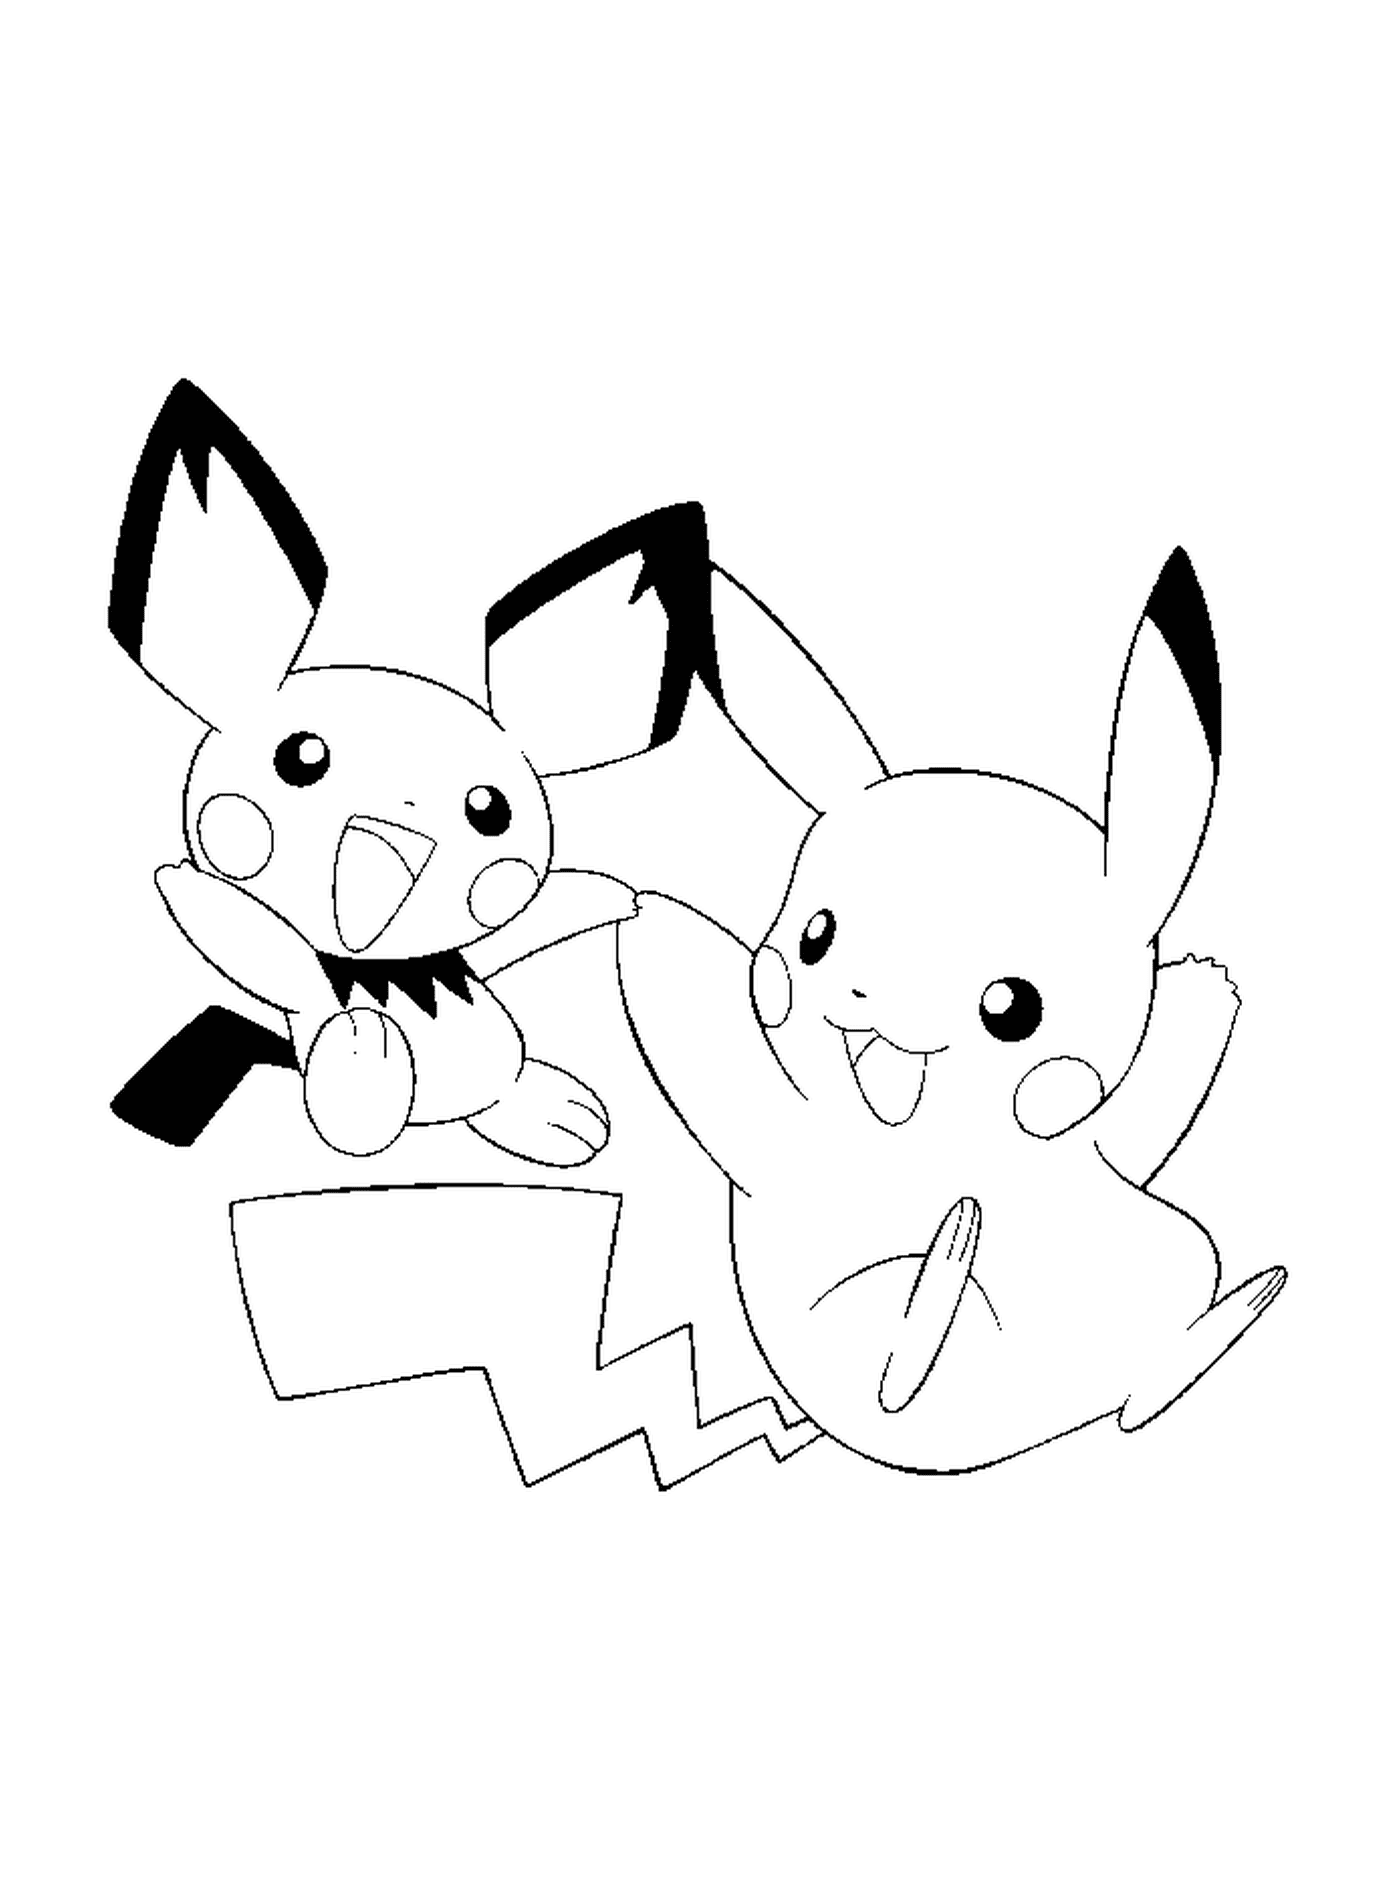  Pikachu e Pichu, amici inseparabili 